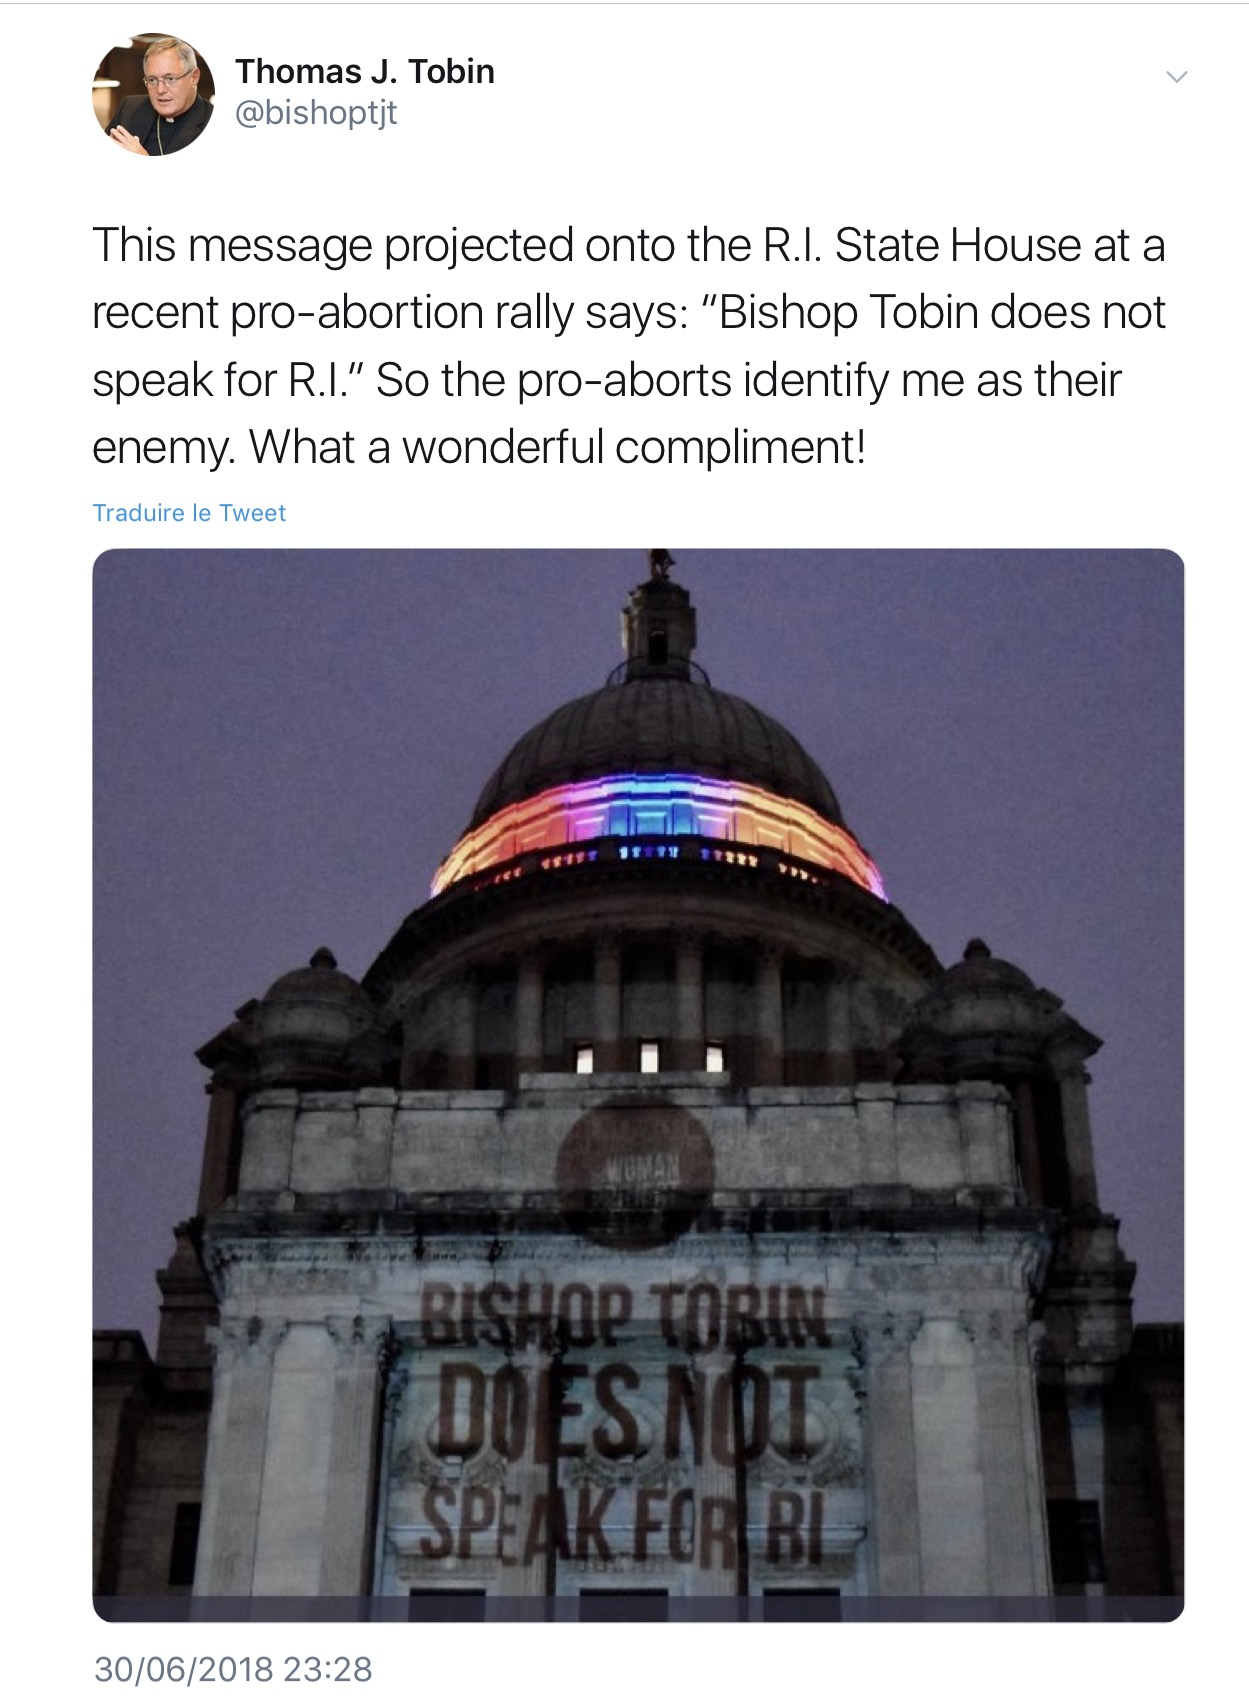 États-Unis: l’évêque de Providence identifié comme opposant à l’avortement